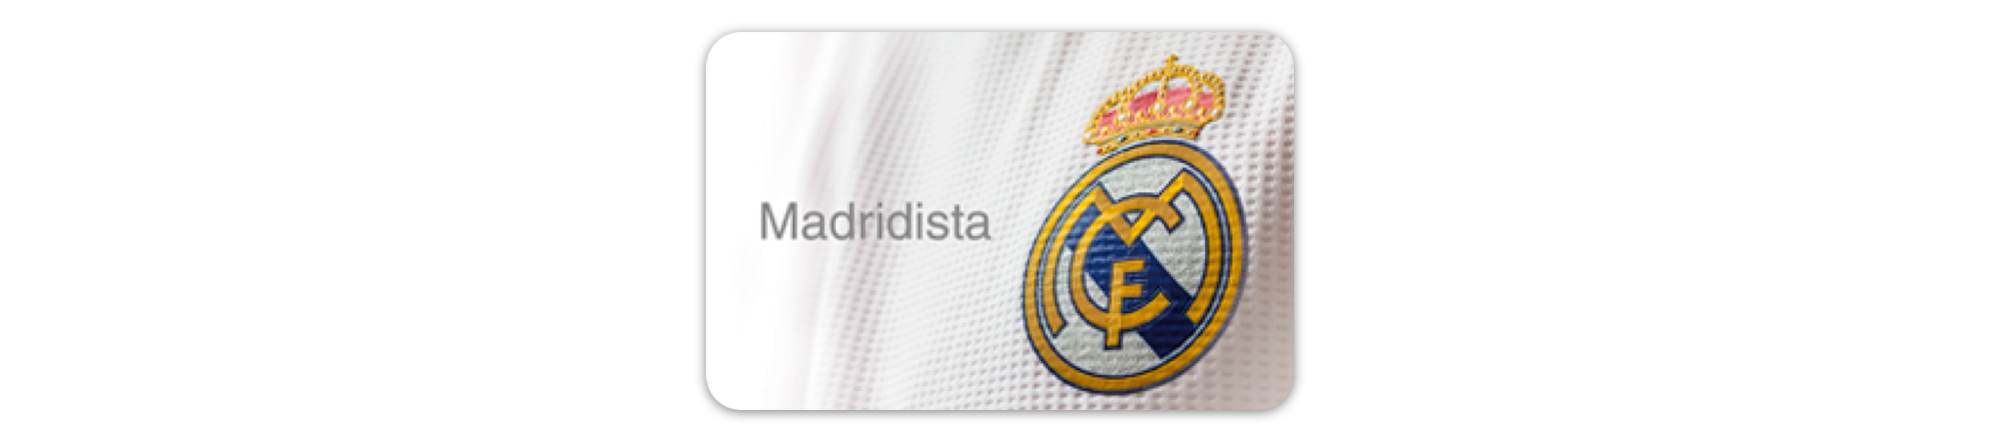 Real Madrid - carnet madridista